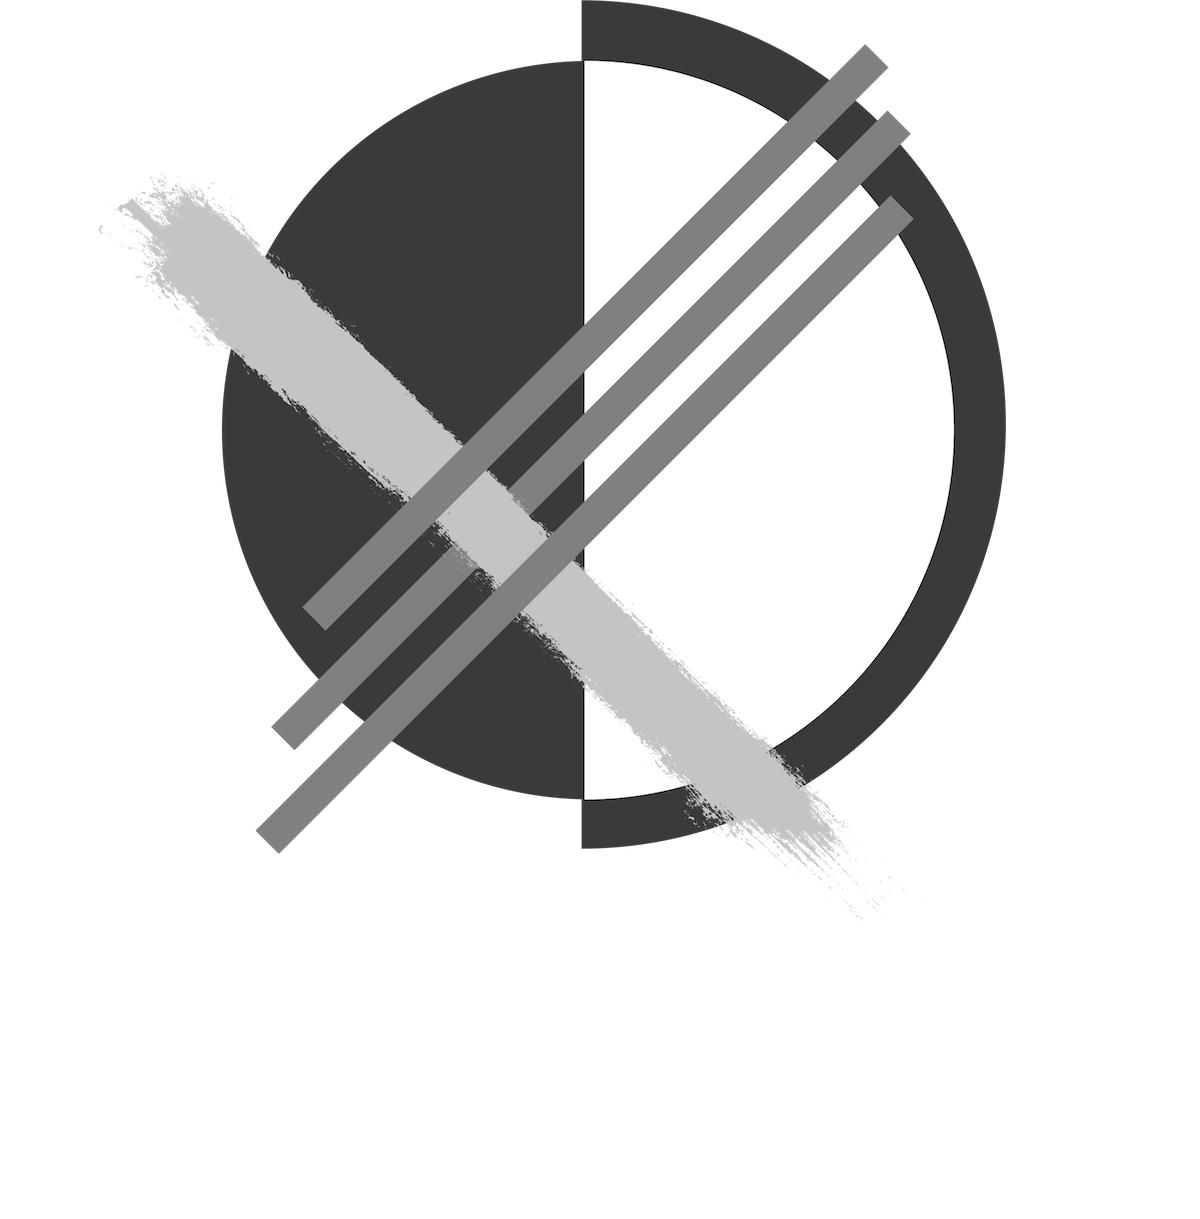 Contexture dance detroit 